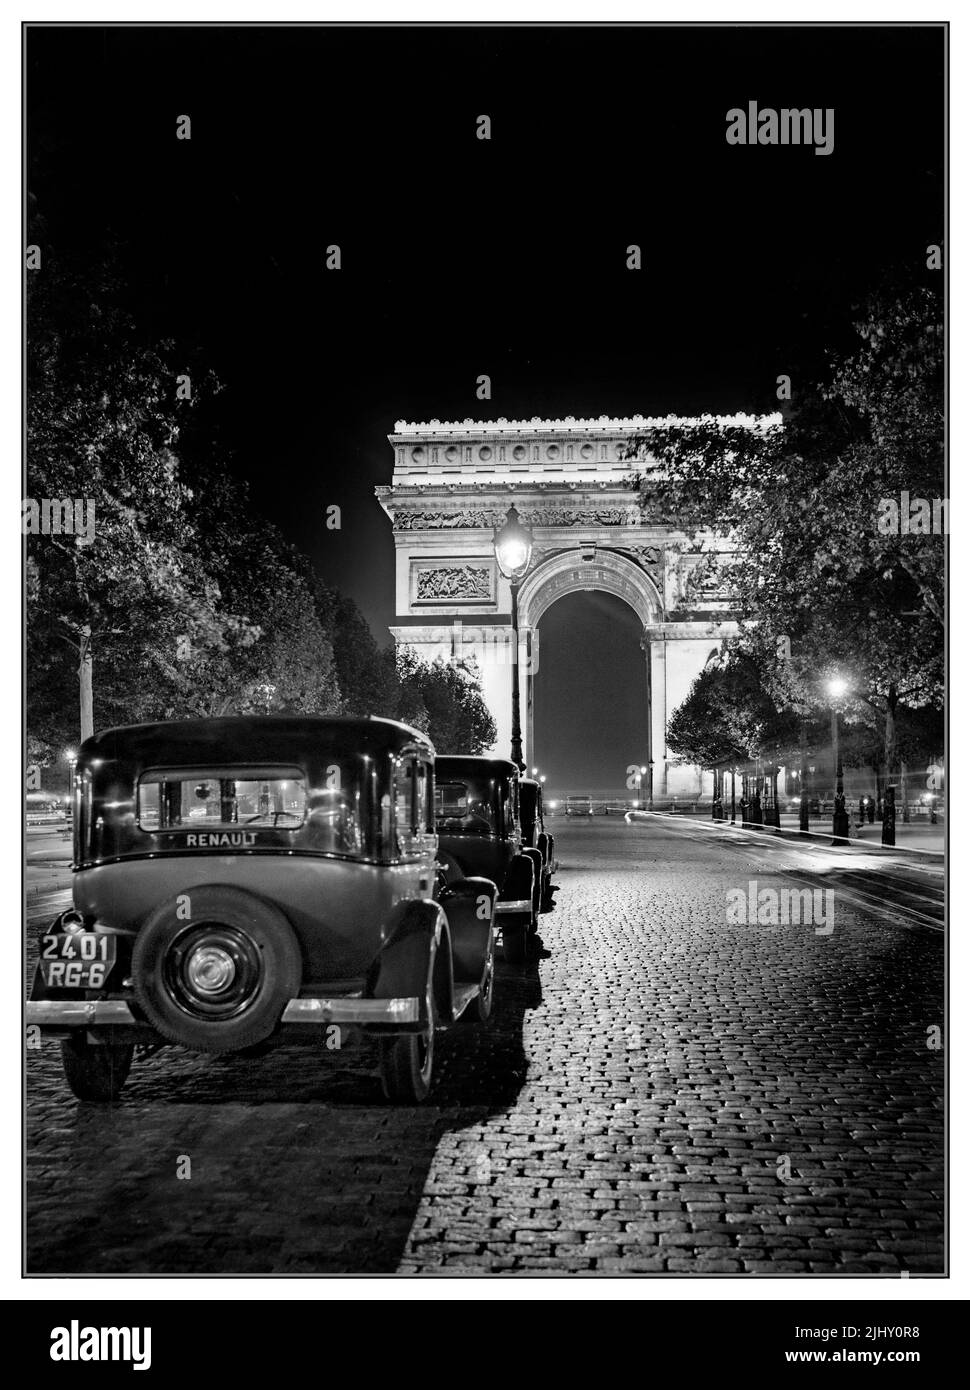 Vintage 1930s Paris et l'Arc de Triomphe la nuit avec une ligne de Renault taxis français en ligne sur les champs Elysées pavées Paris France Banque D'Images